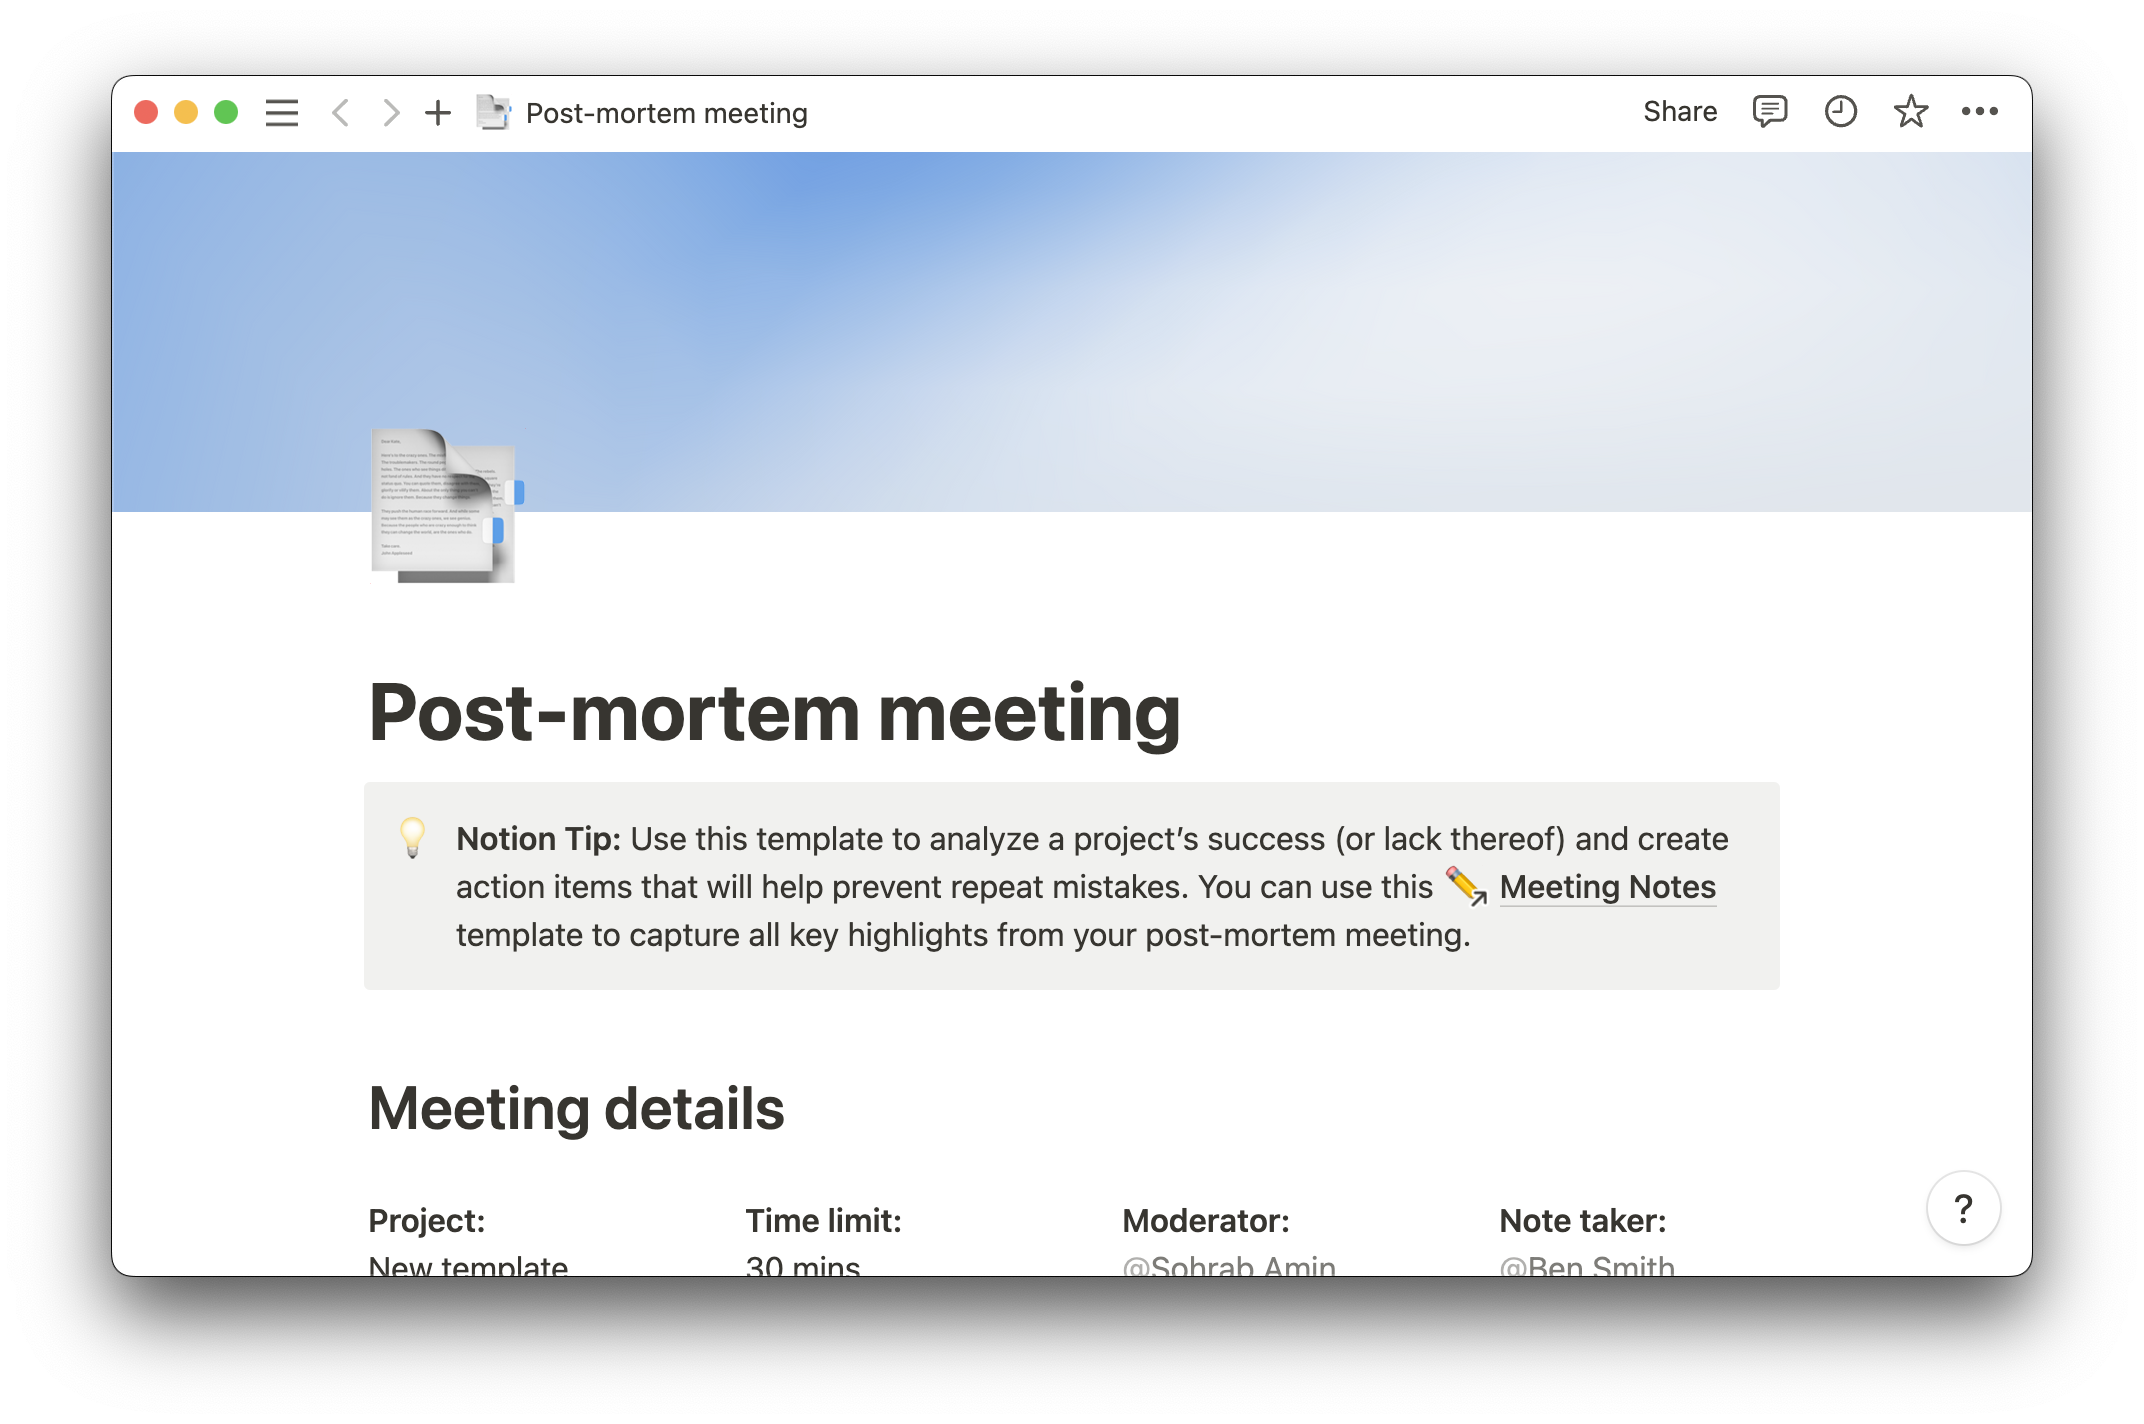 Post-mortem meeting template